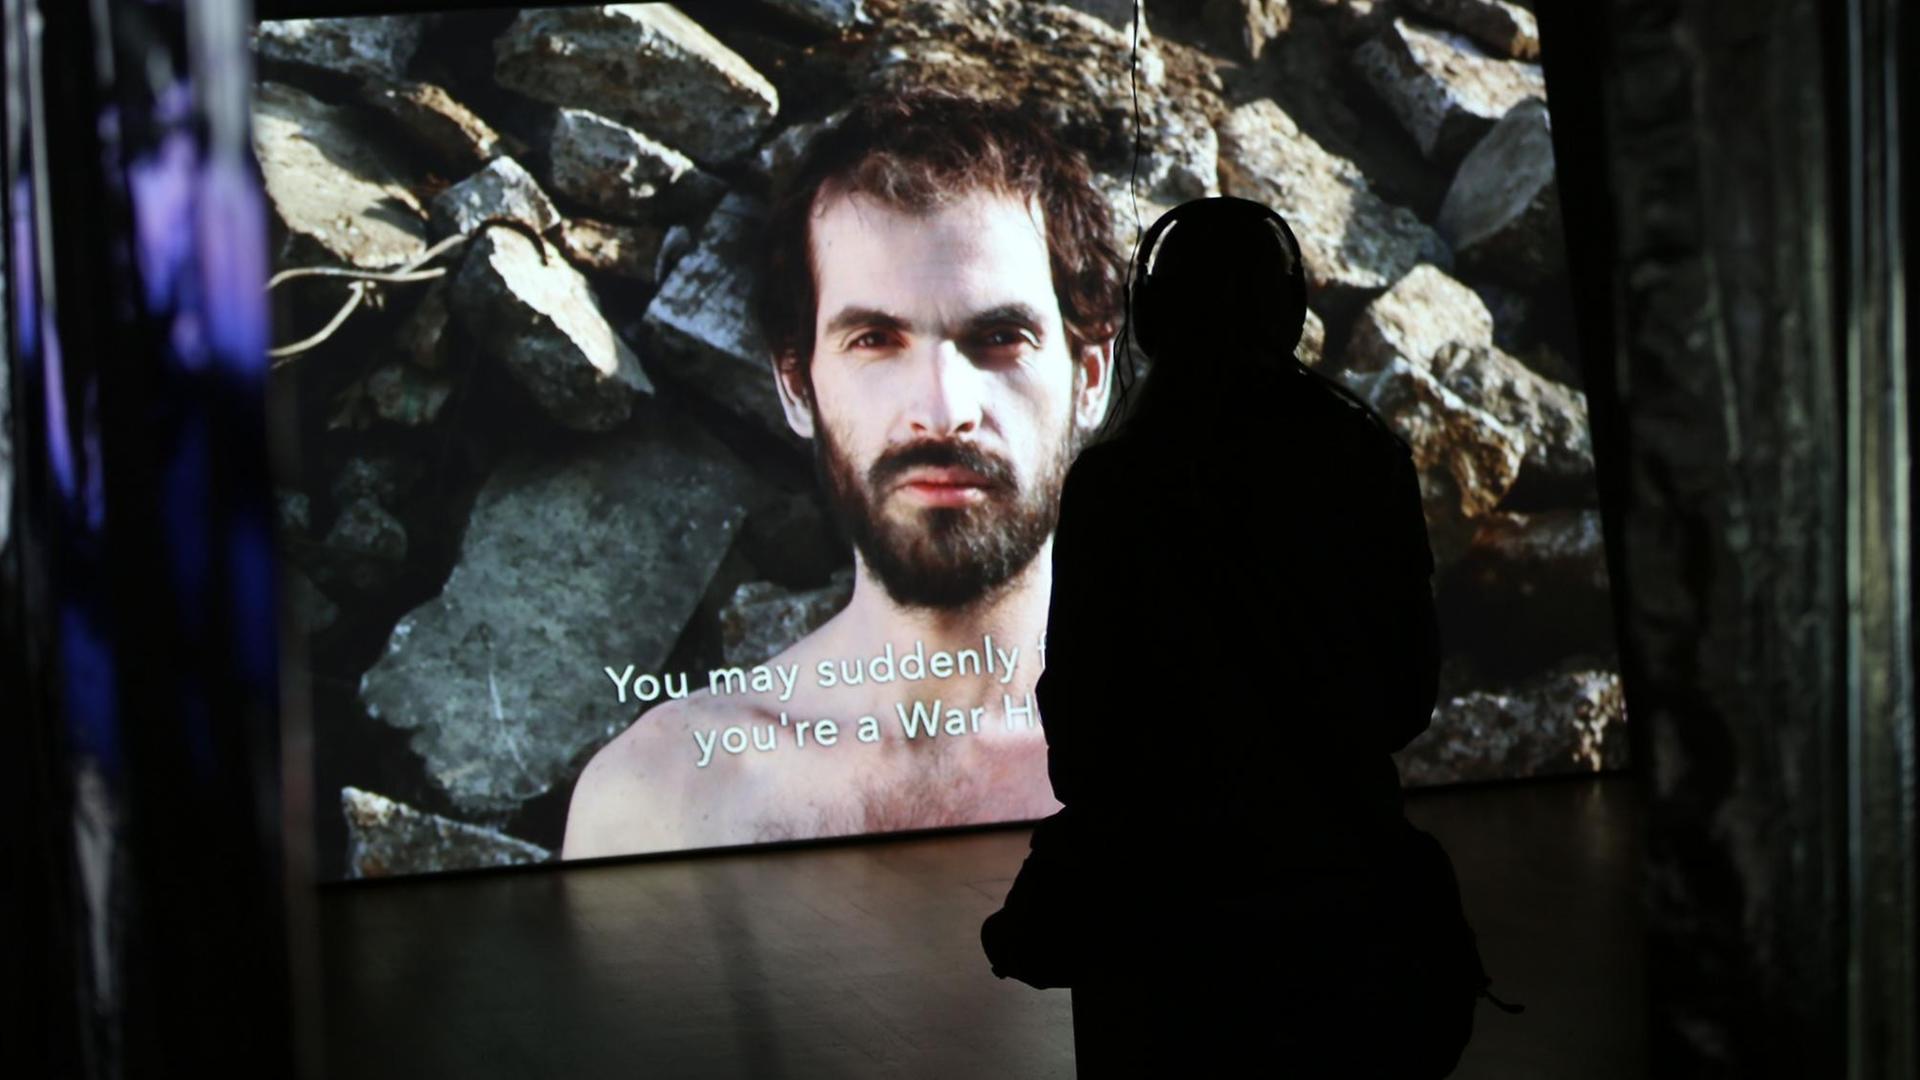 Ein Frau betrachtet am 14.02.2017 in Bonn im Rahmen der Videonale im Kunstmuseum das Video "As much as anyone" von Banjamin Ramirez Perez.